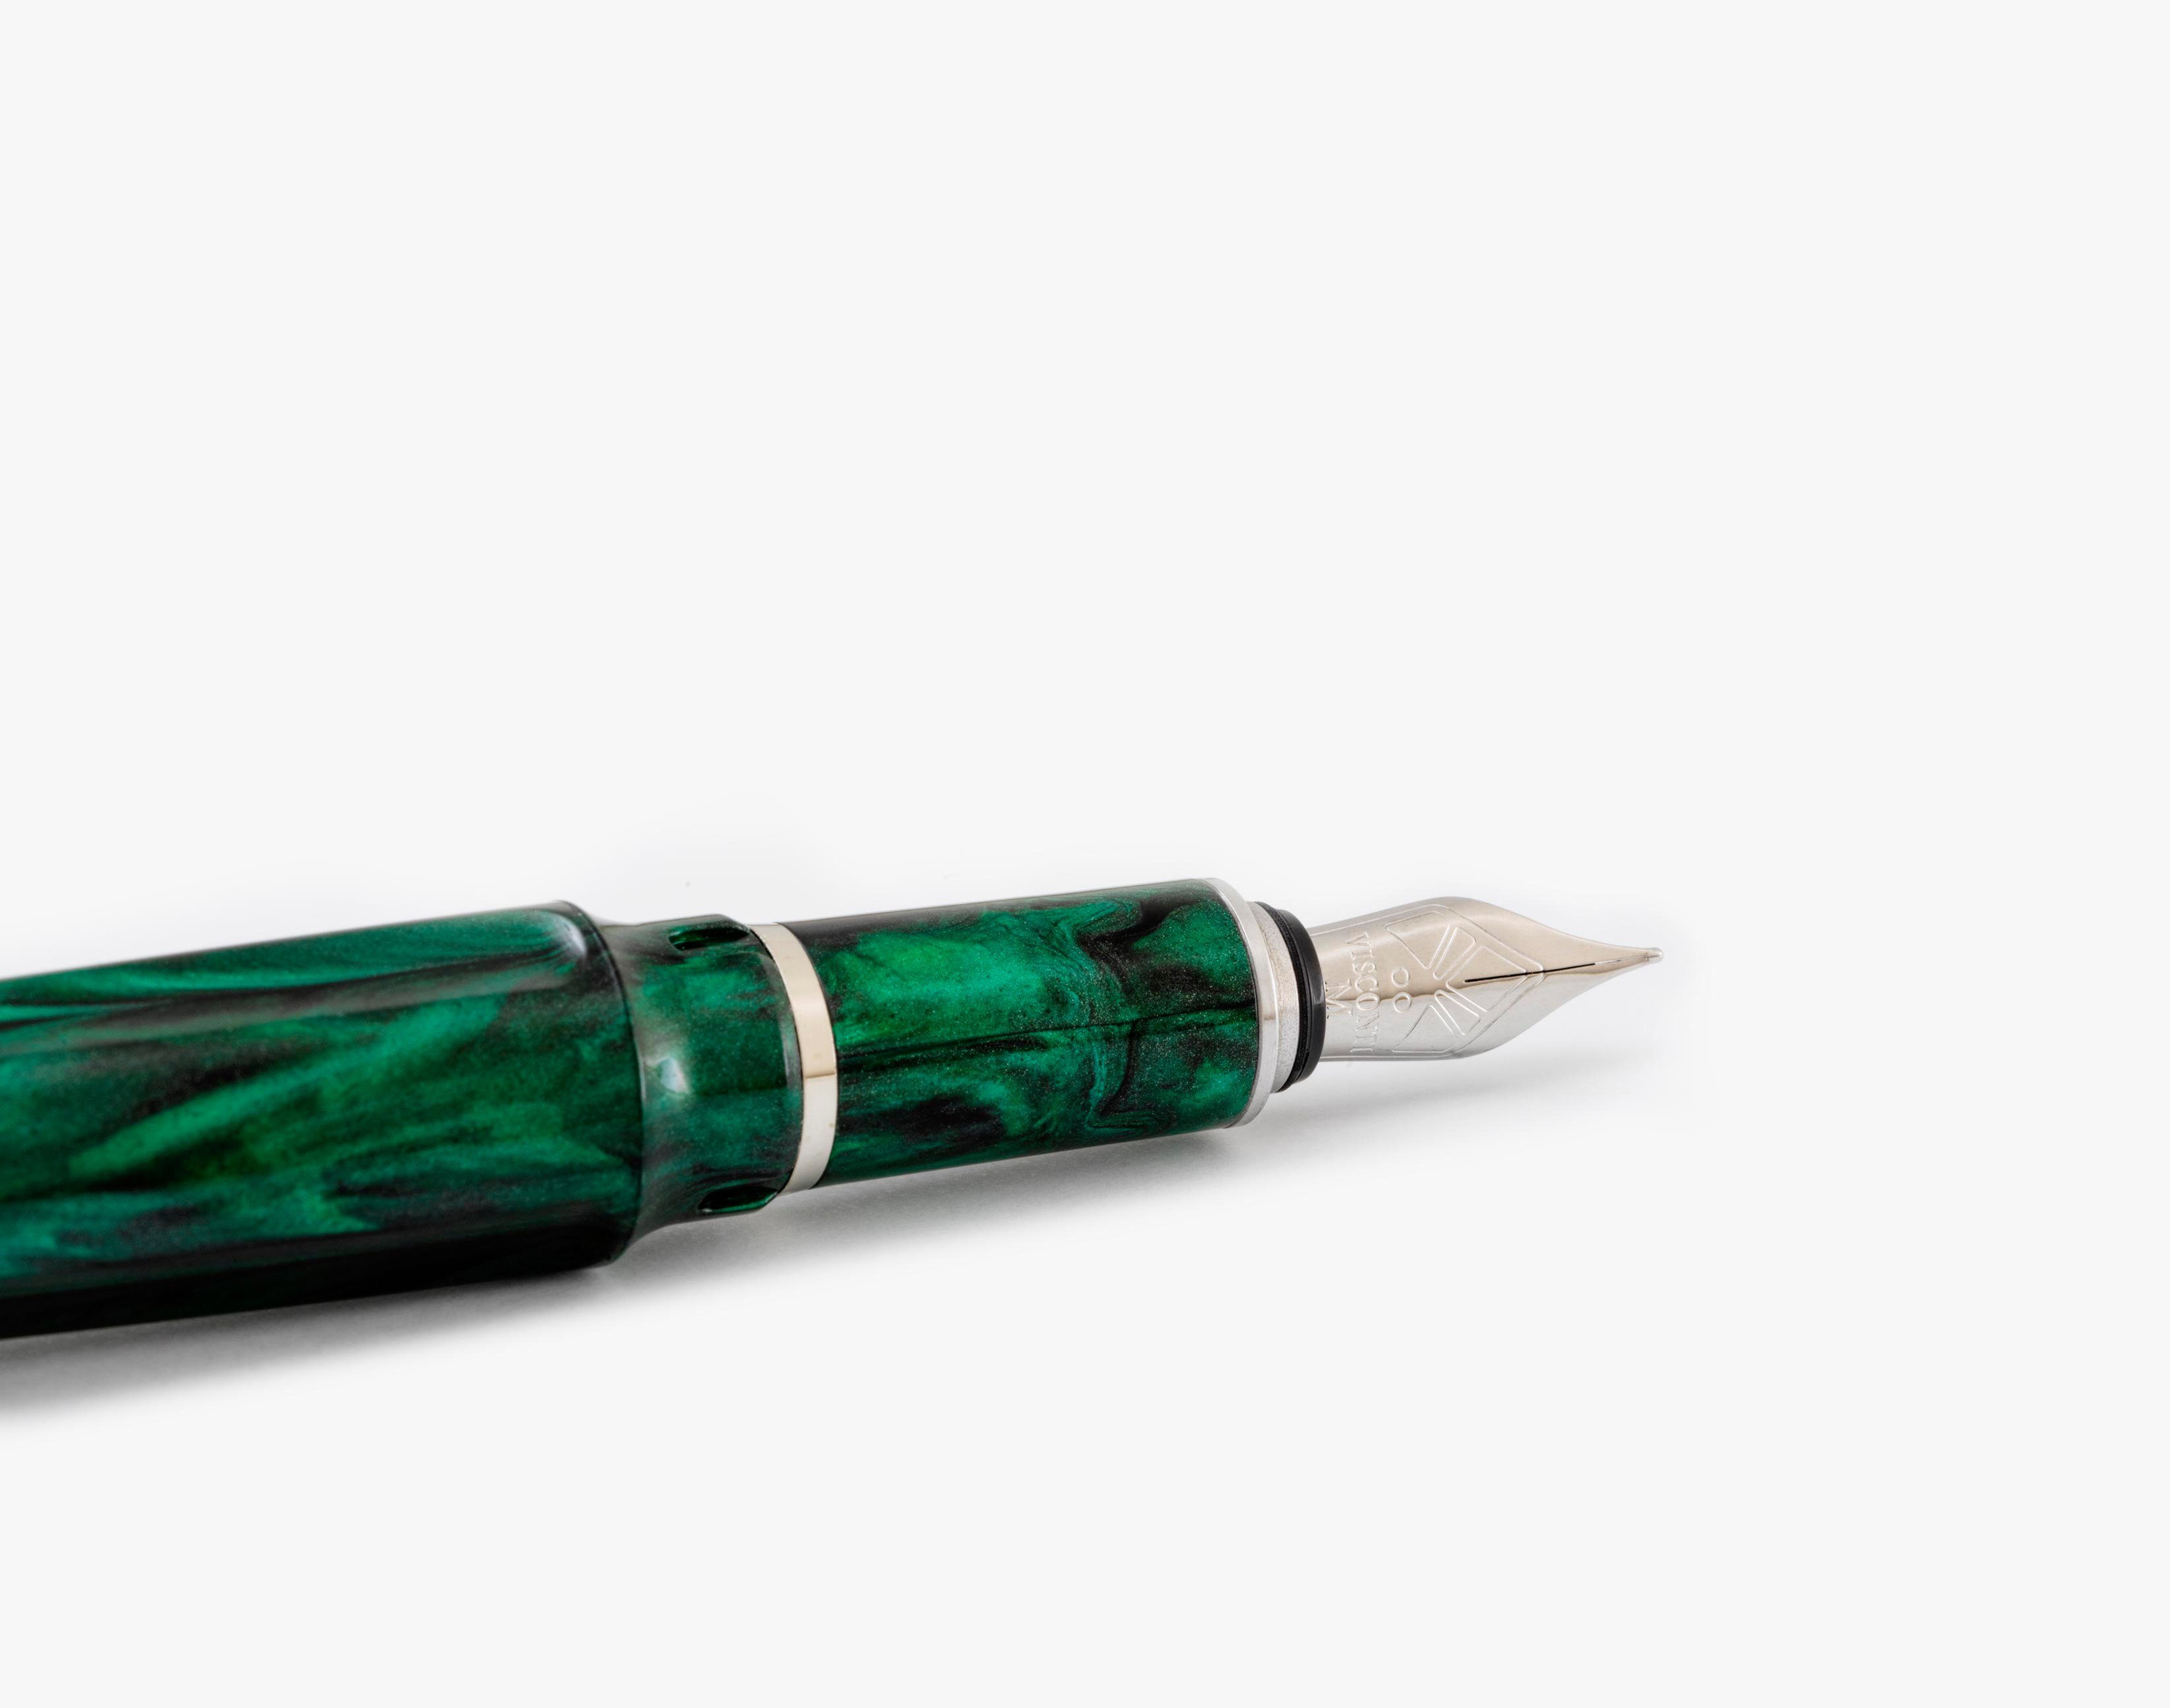 Emerald Pen Füllfederhalter verschiedene, (kein Füllfederhalter Visconti EF Visconti Fountain Set) Mirage Emerald